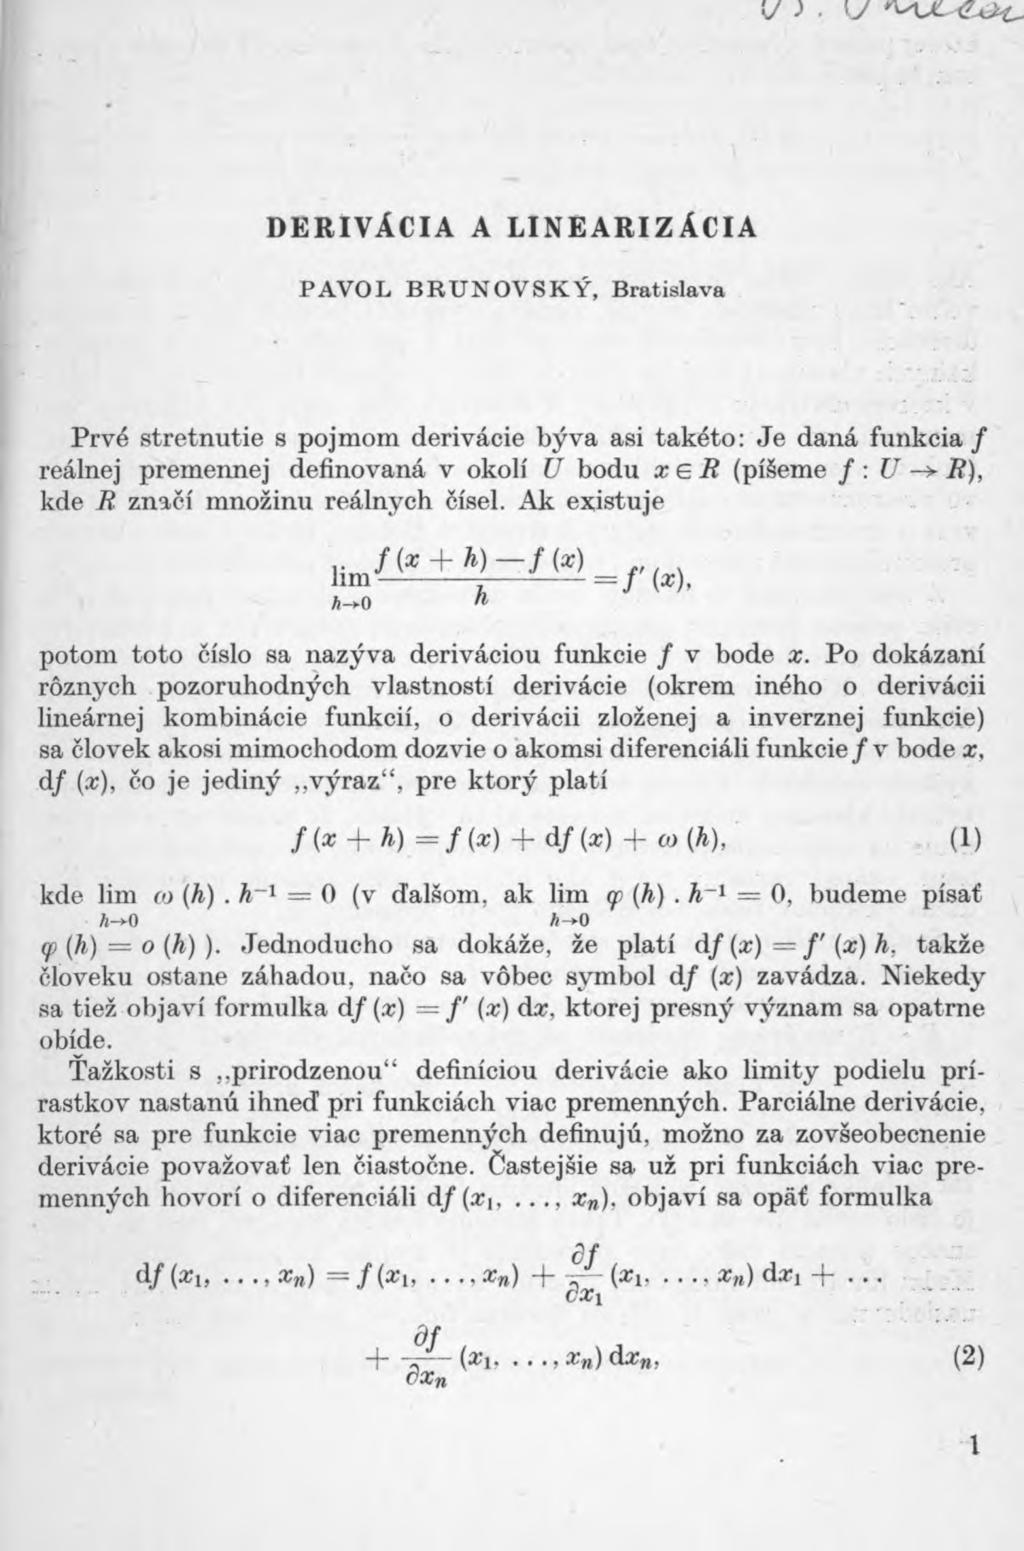 derivacia a linearizacia PAVOL BRUNOV SKY, Bratislava Prve stretnutie s pojmom derivacie byva asi taketo: Je dana fiinkcia / realnej prememiej definovana v okoli U bodu x E R (pi eme f : U R), kde R